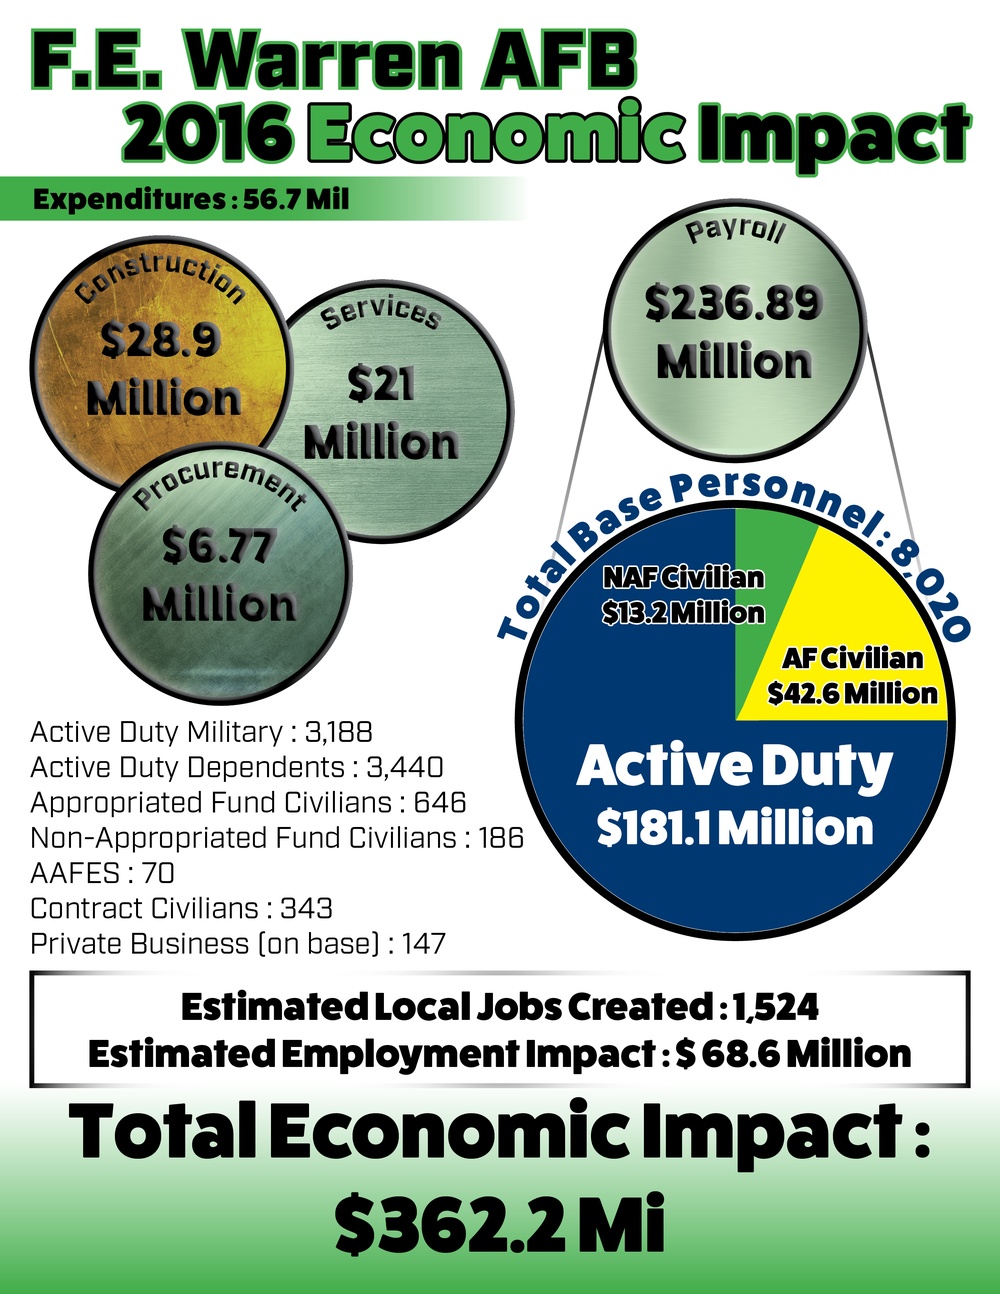 Economic Impact of F. E. Warren AFB